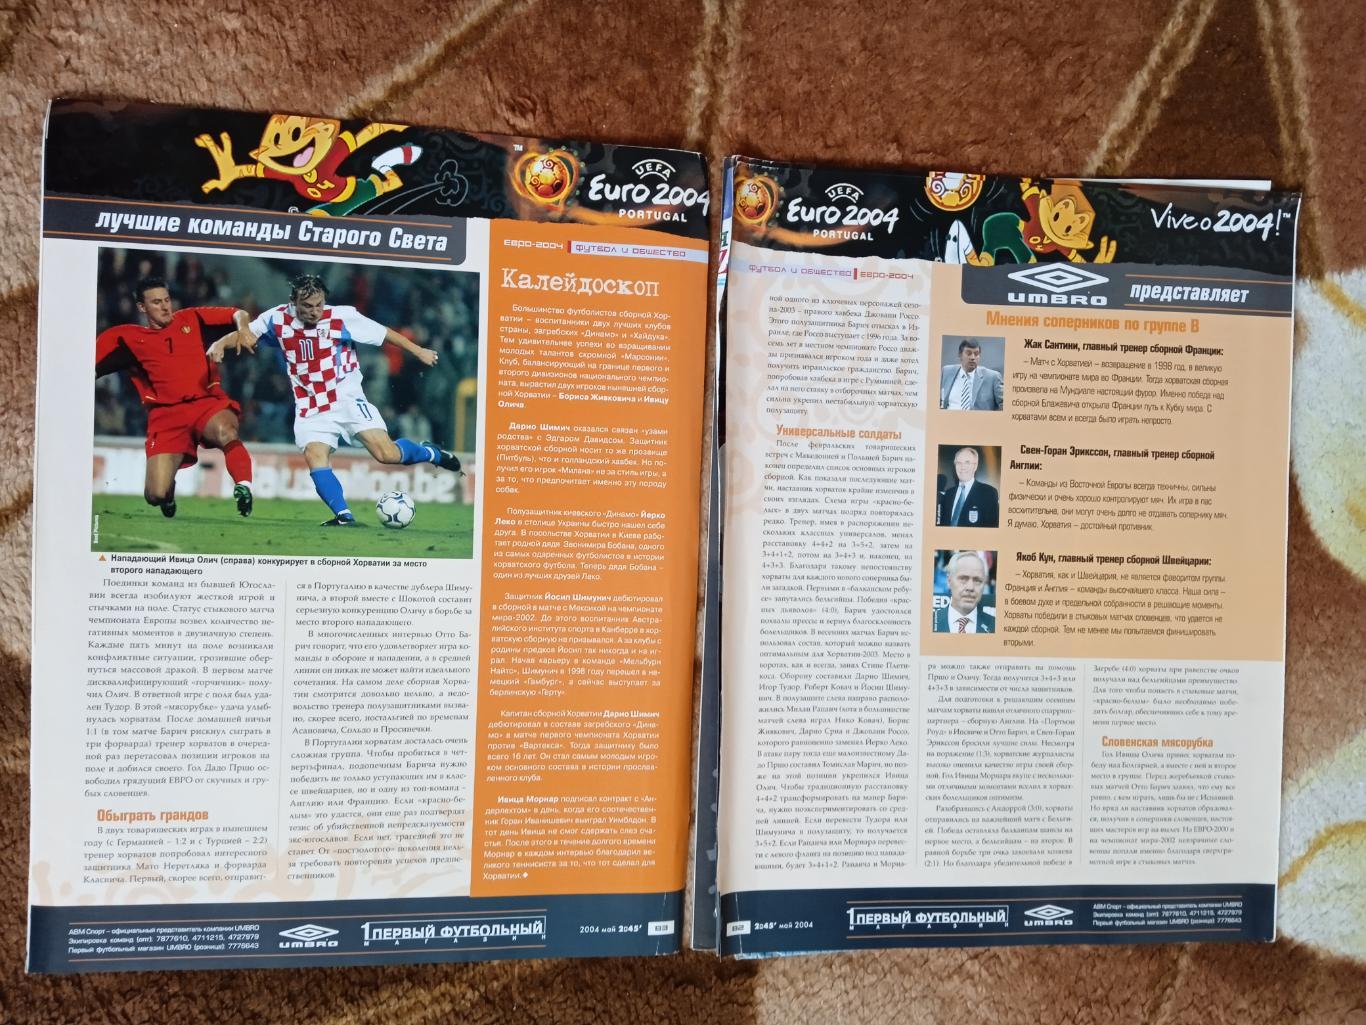 Статья.Футбол.Чемпионат Европы 2000.Бельгия,Голландия.Журнал 2х45 2000.